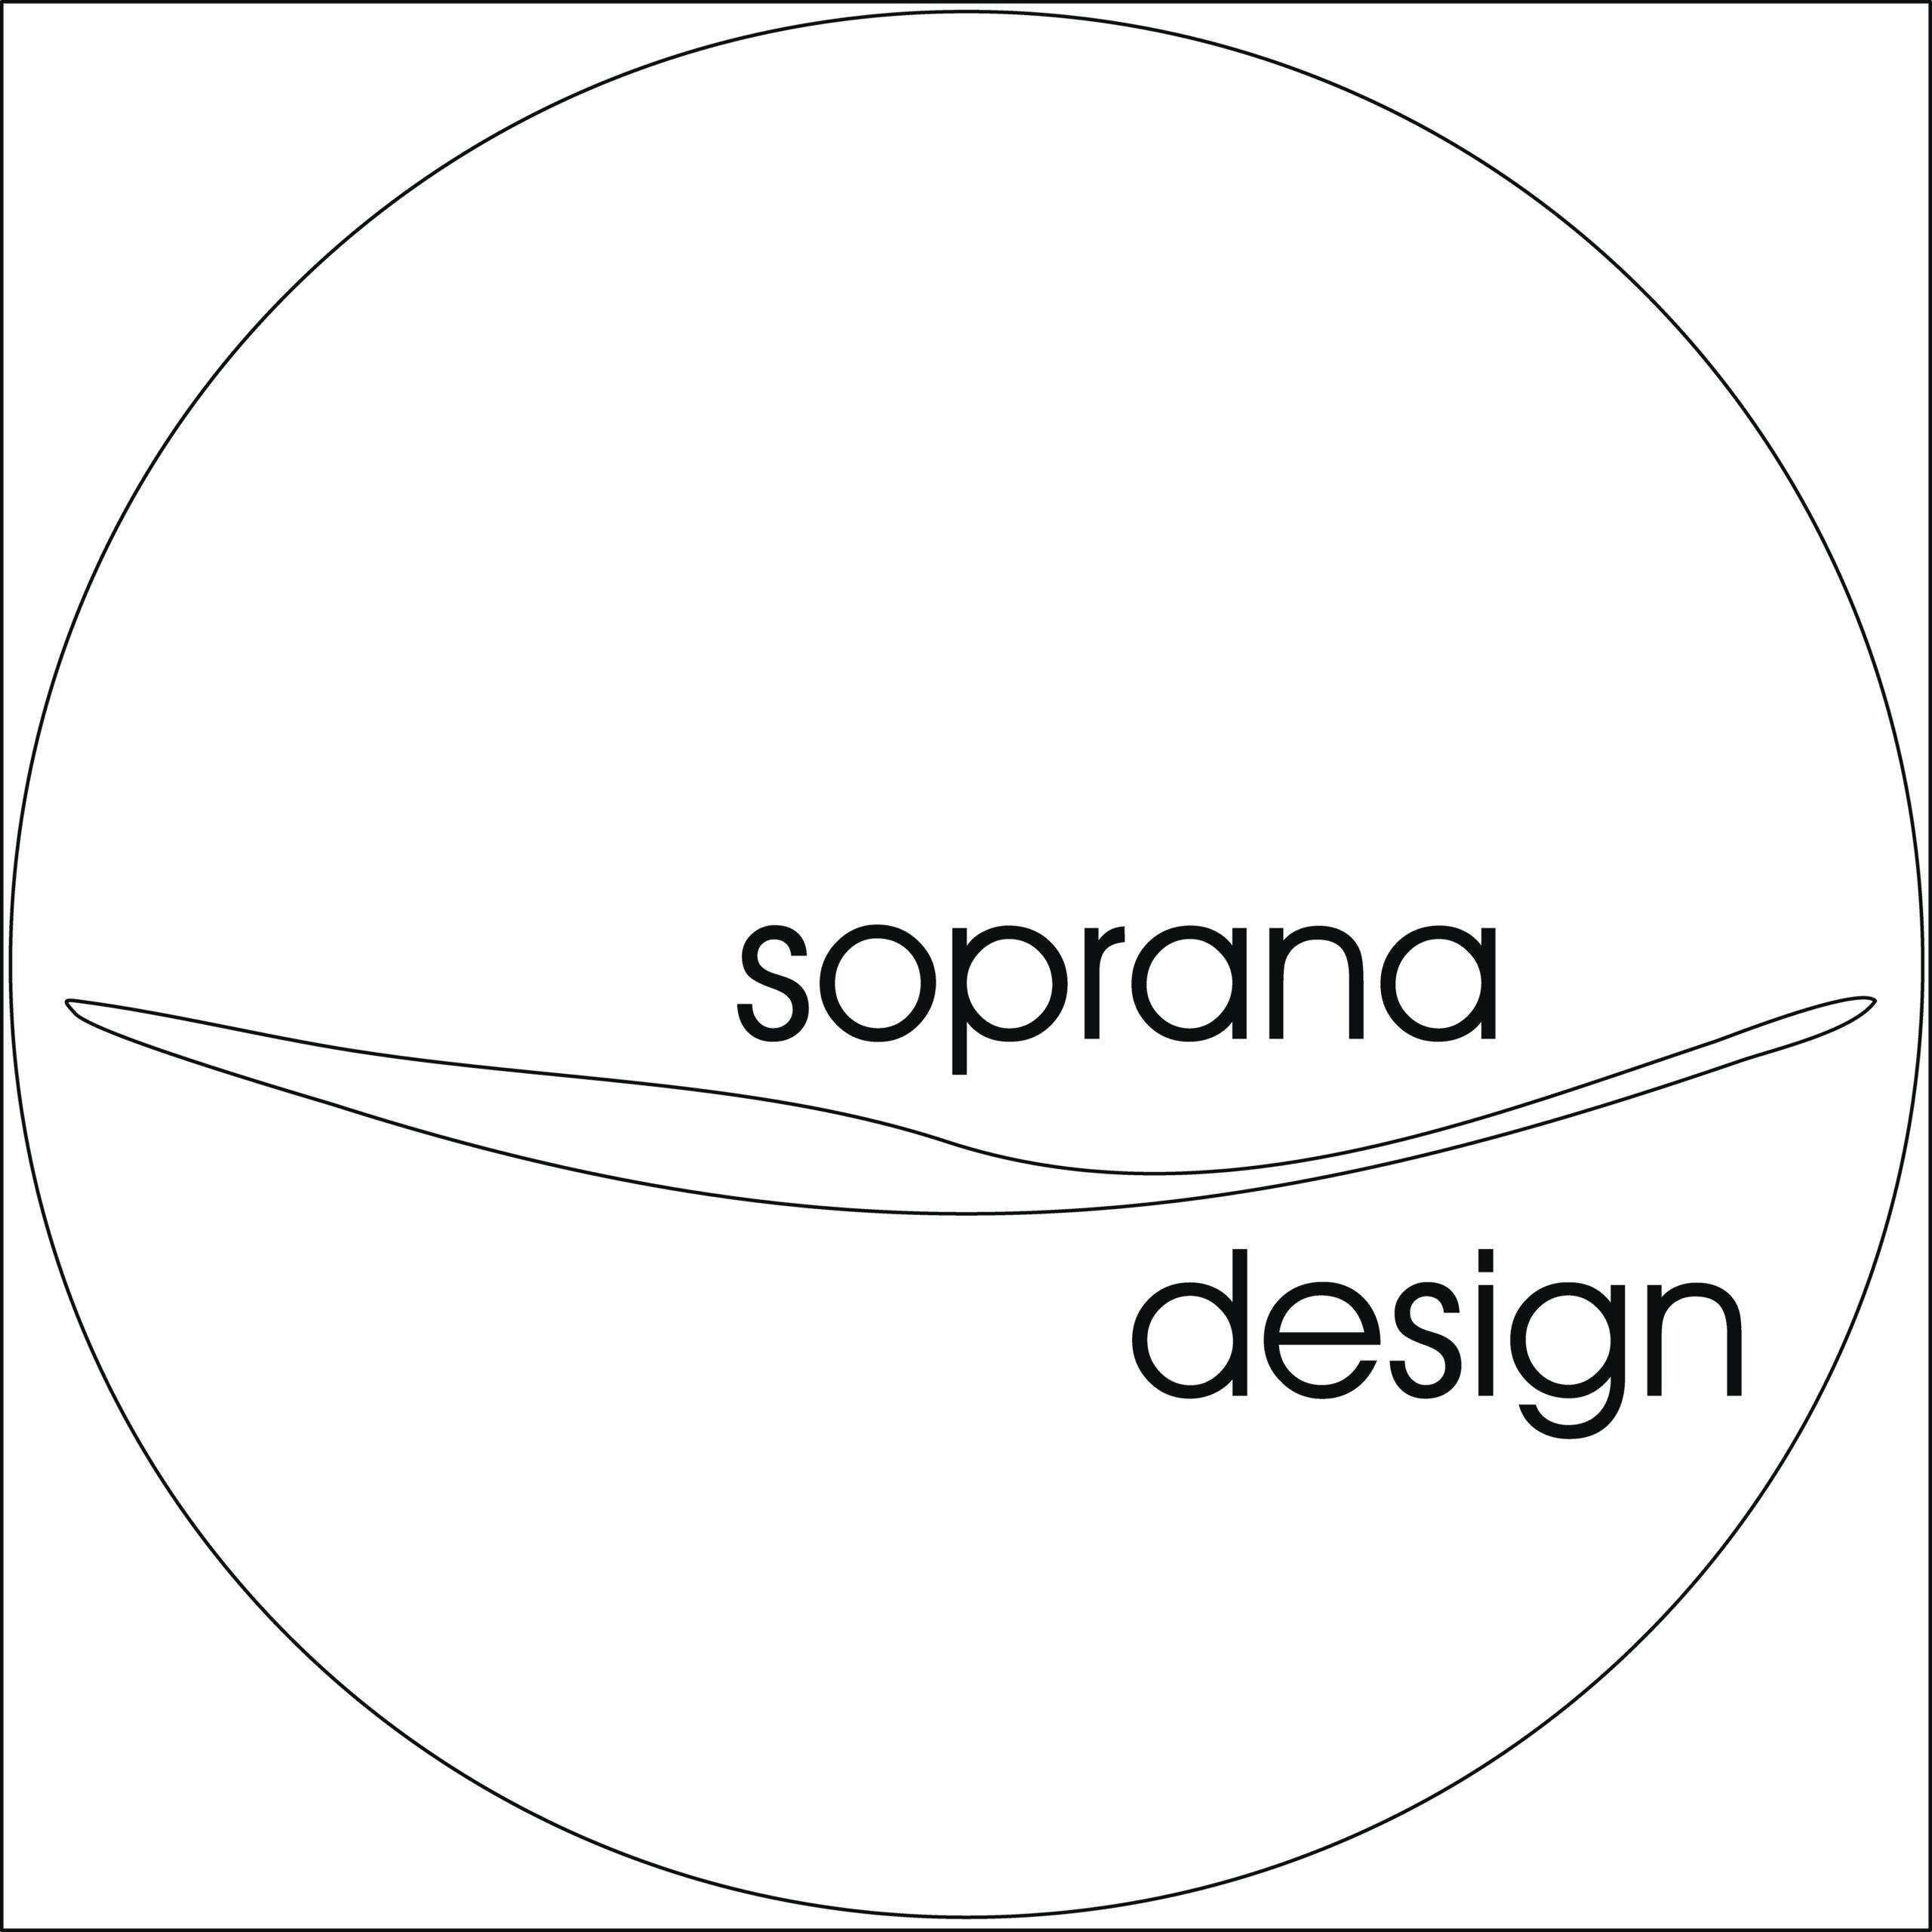 soprana design